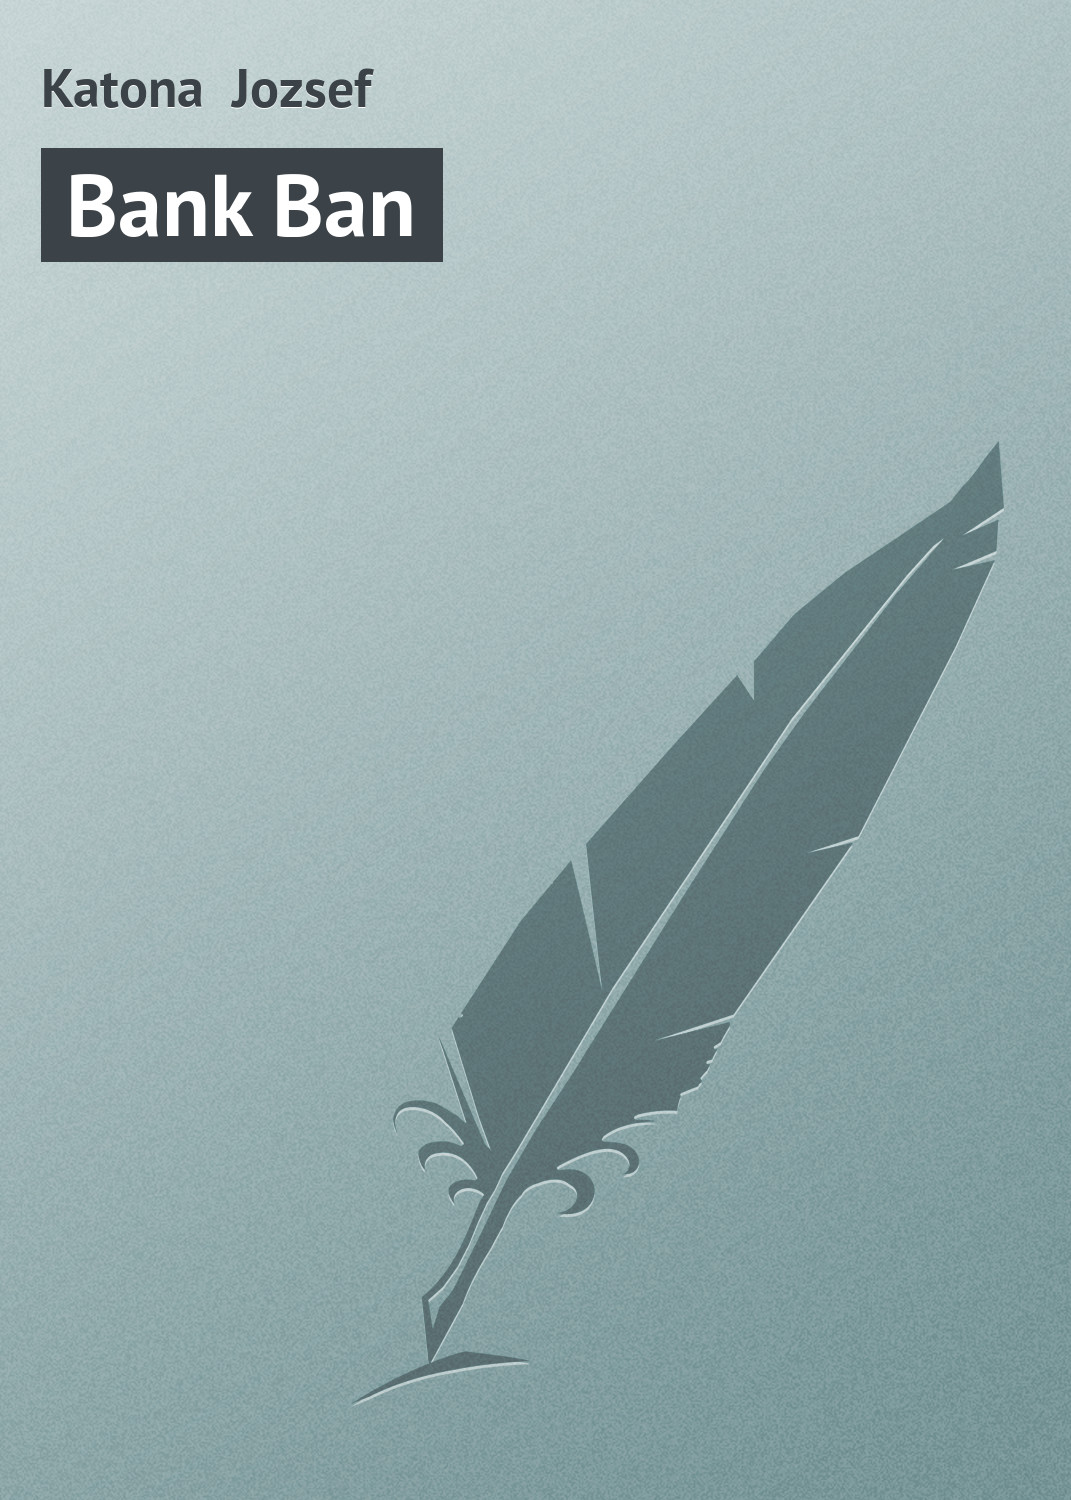 Книга Bank Ban из серии , созданная Katona Jozsef, может относится к жанру Зарубежная старинная литература, Зарубежная классика. Стоимость электронной книги Bank Ban с идентификатором 21102702 составляет 5.99 руб.